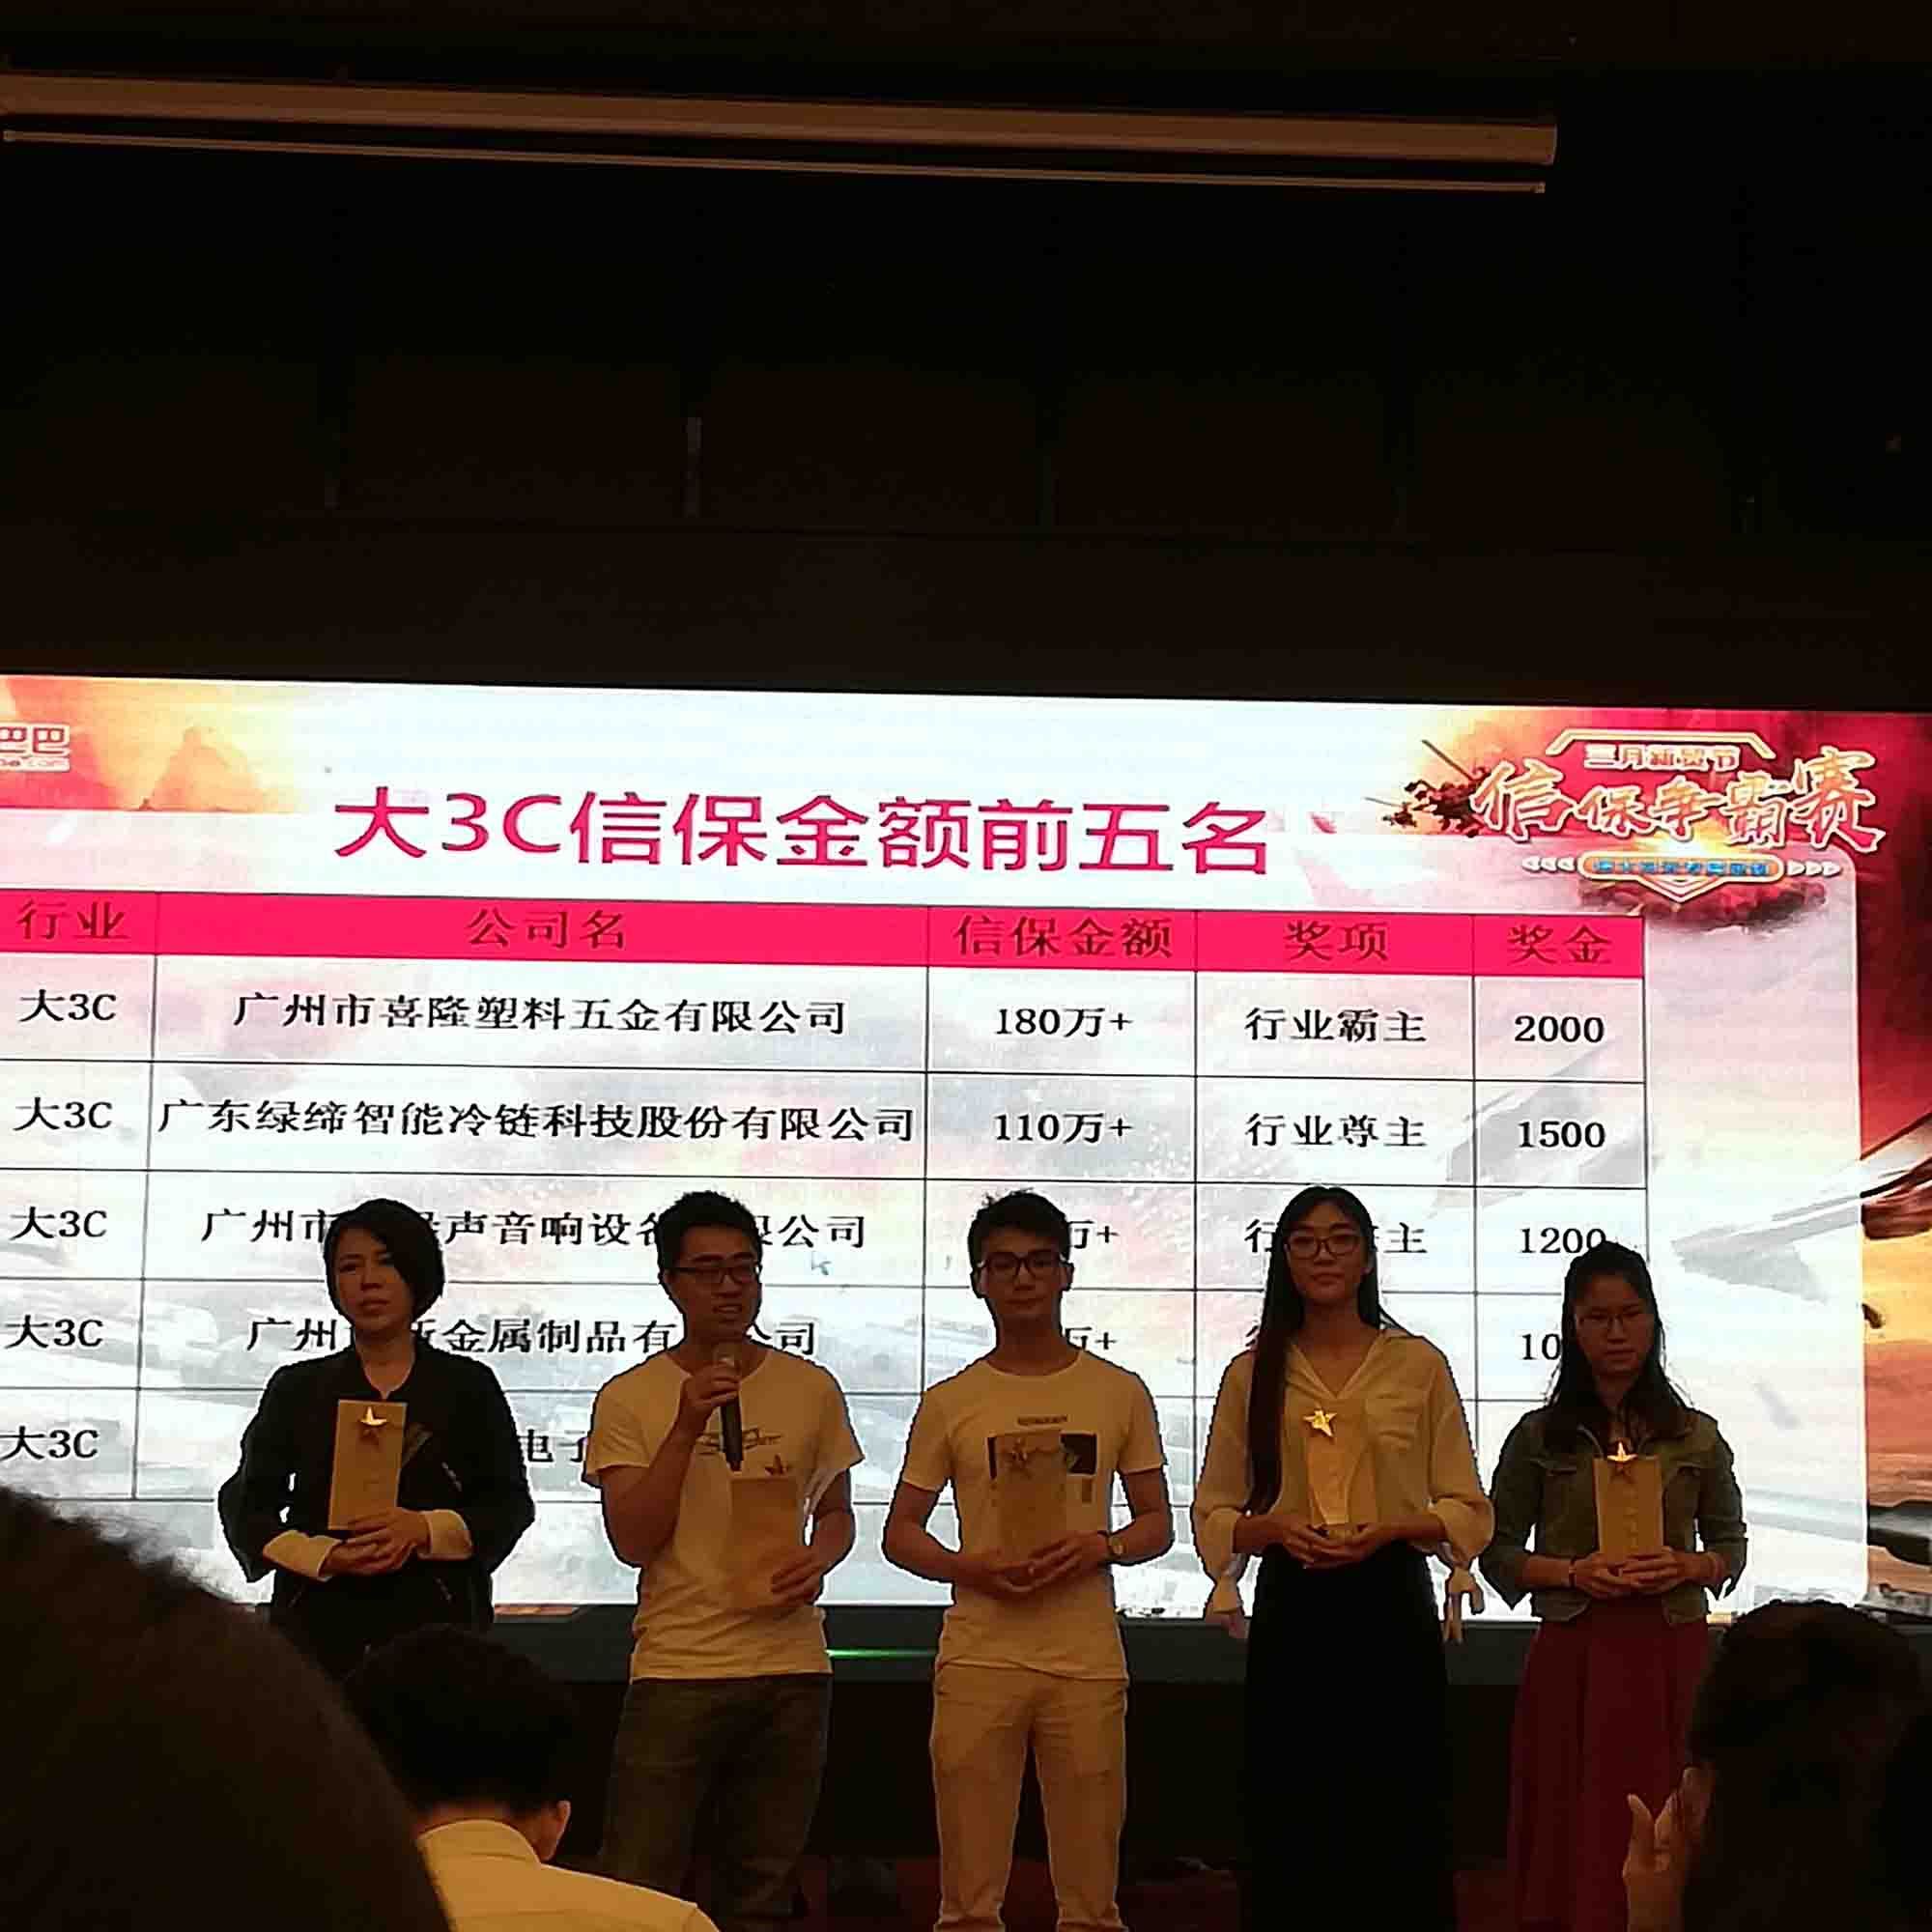 Féliciter notre entreprise a obtenu la troisième place sur Alibaba Trade Assurance Competition